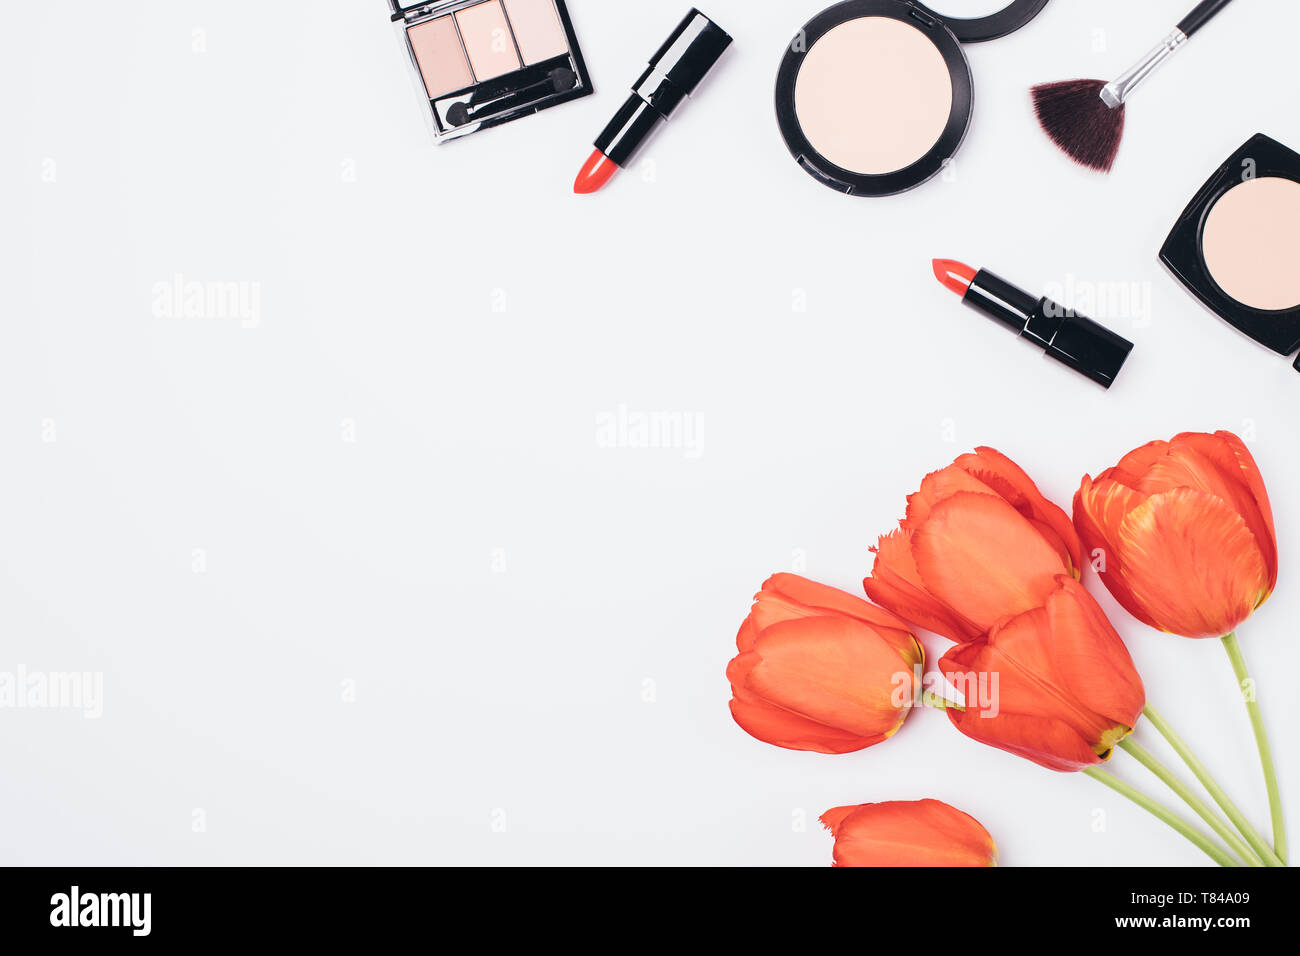 Piatto disposizione laici delle donne di prodotti cosmetici per il trucco e accessori bouquet di tulipani rossi su sfondo bianco con copia spazio, vista dall'alto. Foto Stock